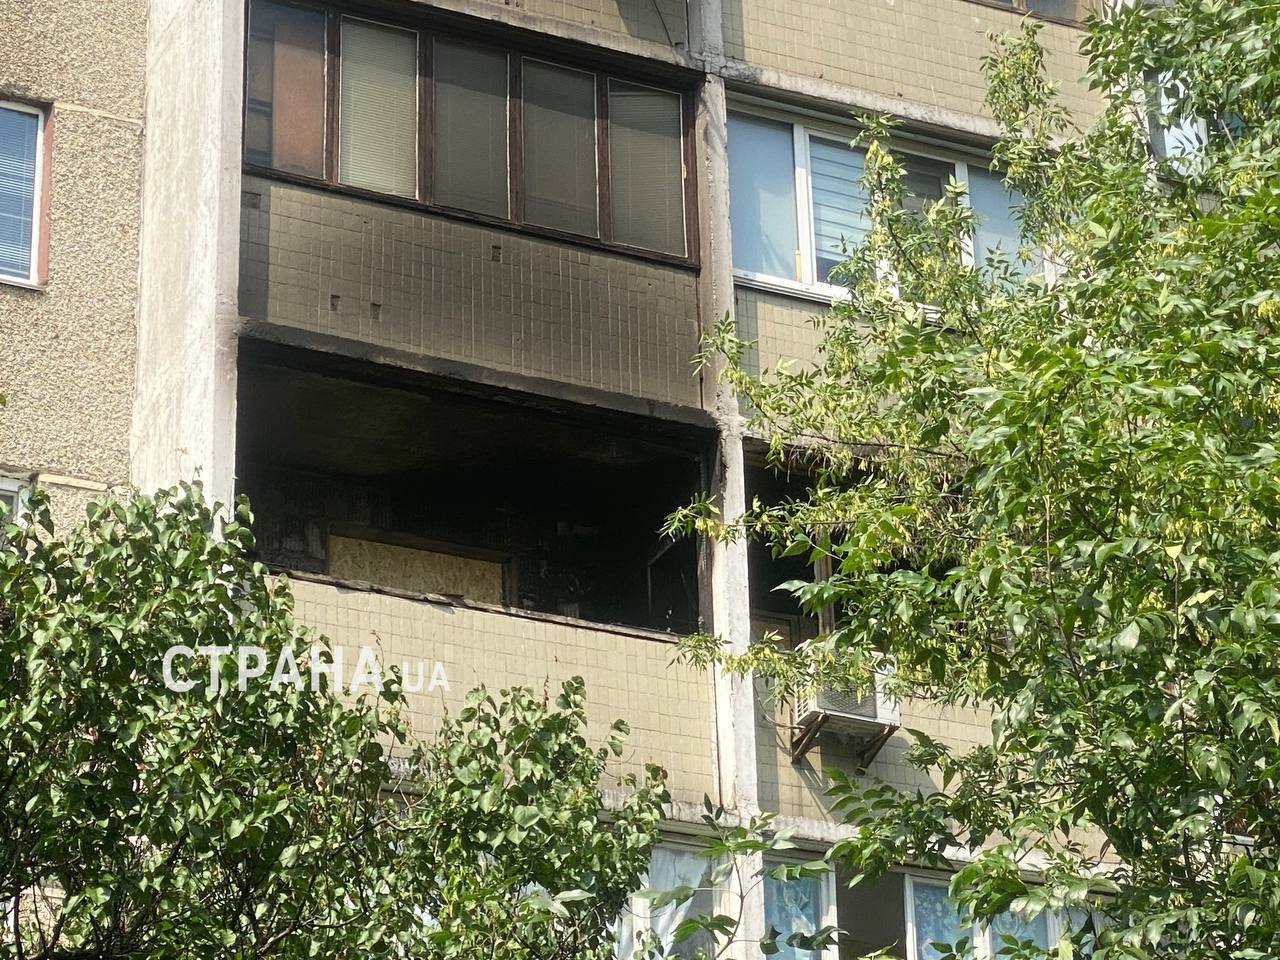 Будинок у Шевченківському районі Києва, який постраждав внаслідок нічної атаки